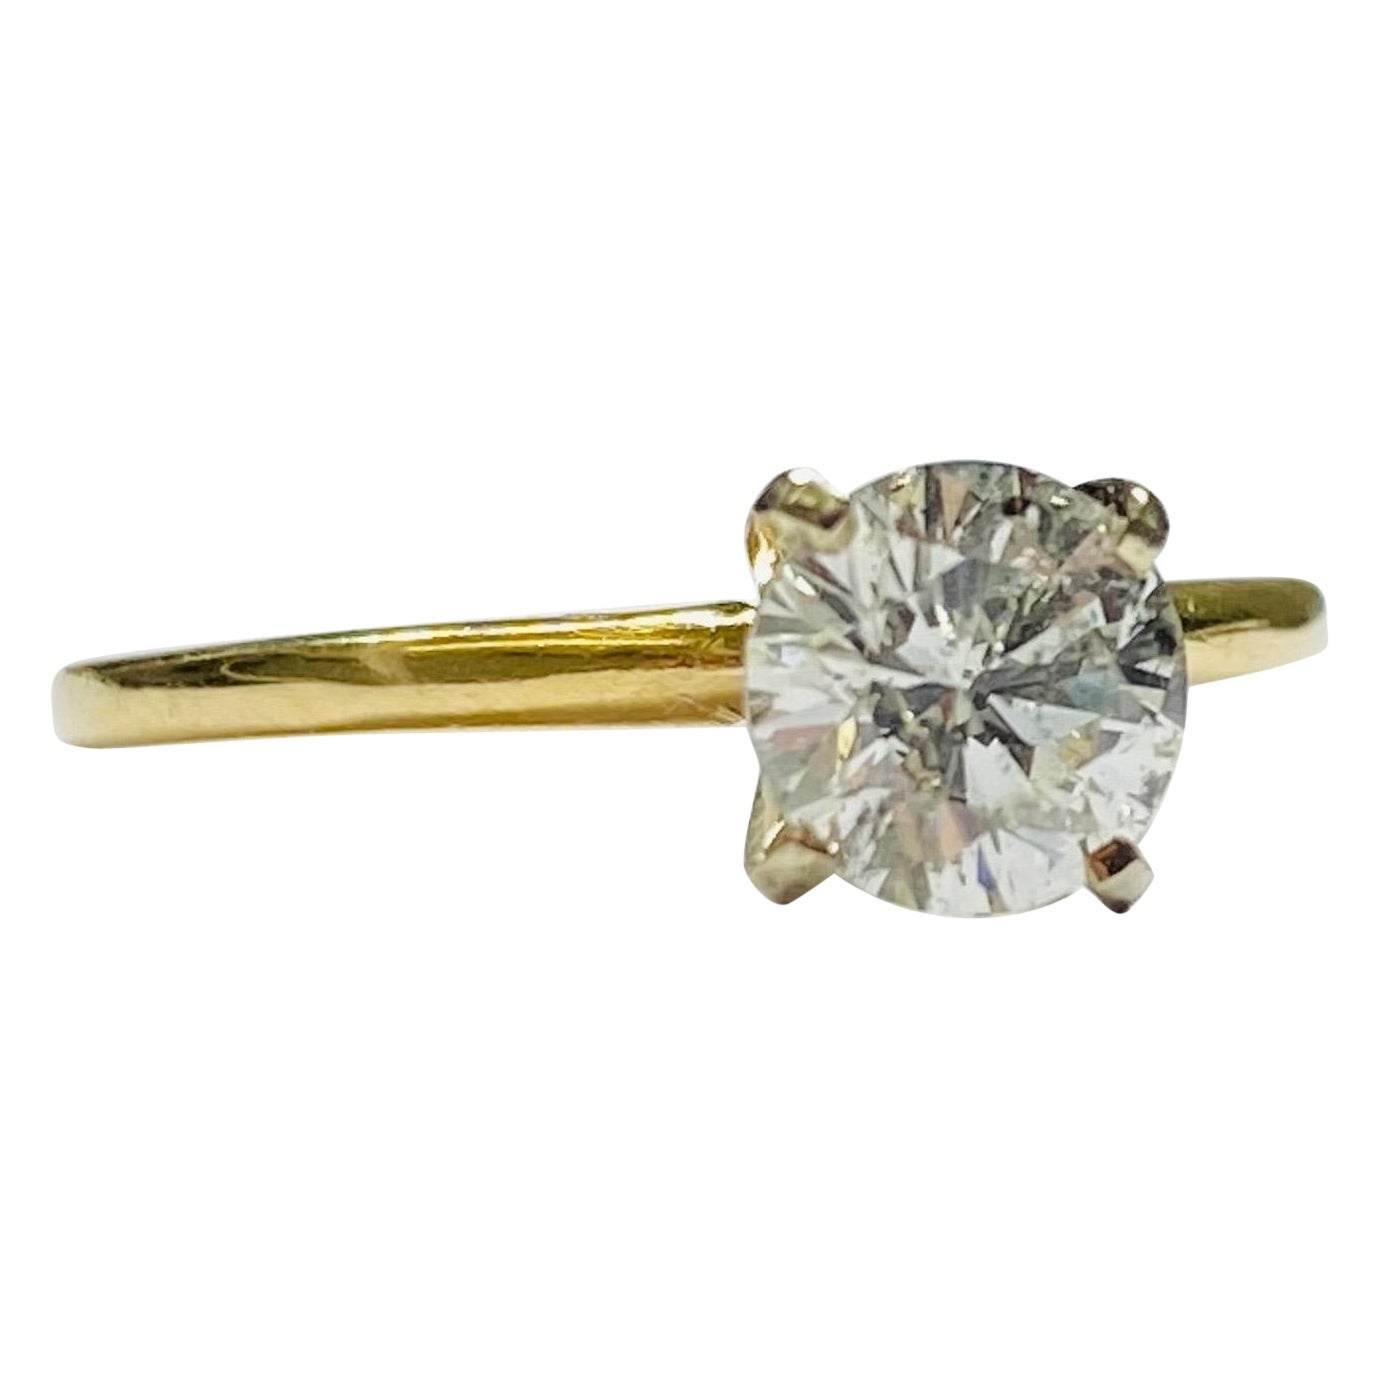 Bague de fiançailles vintage en or 14 carats avec diamant rond central de 0,87 carat